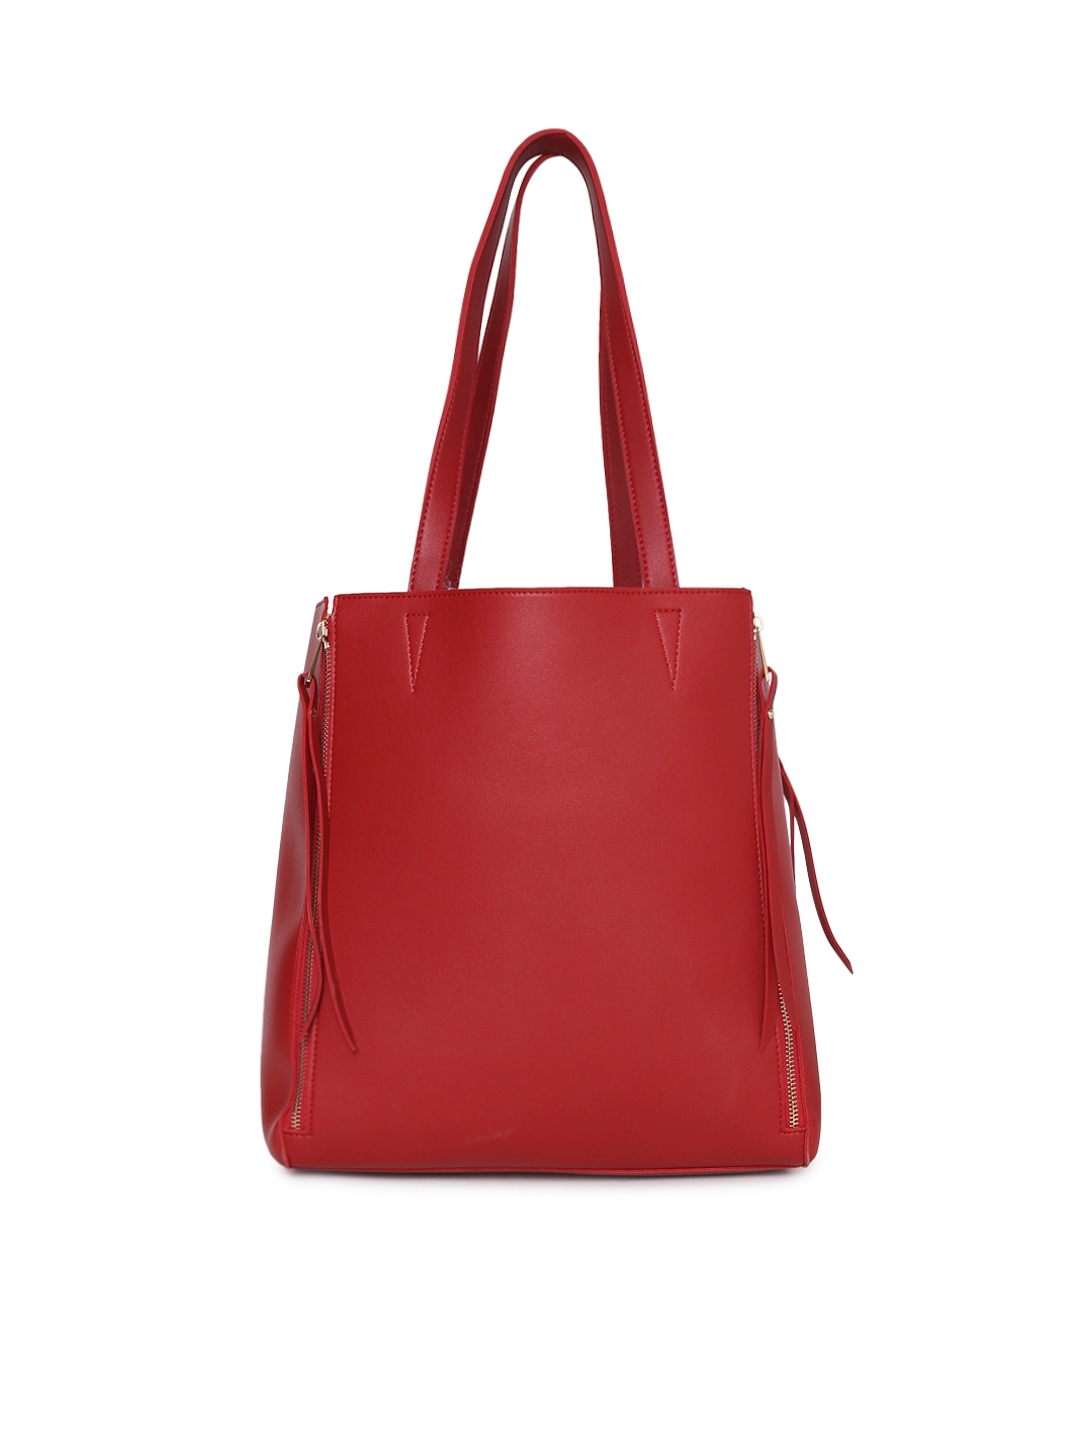 Dressberry Handbags - Buy Dressberry Handbags online in India